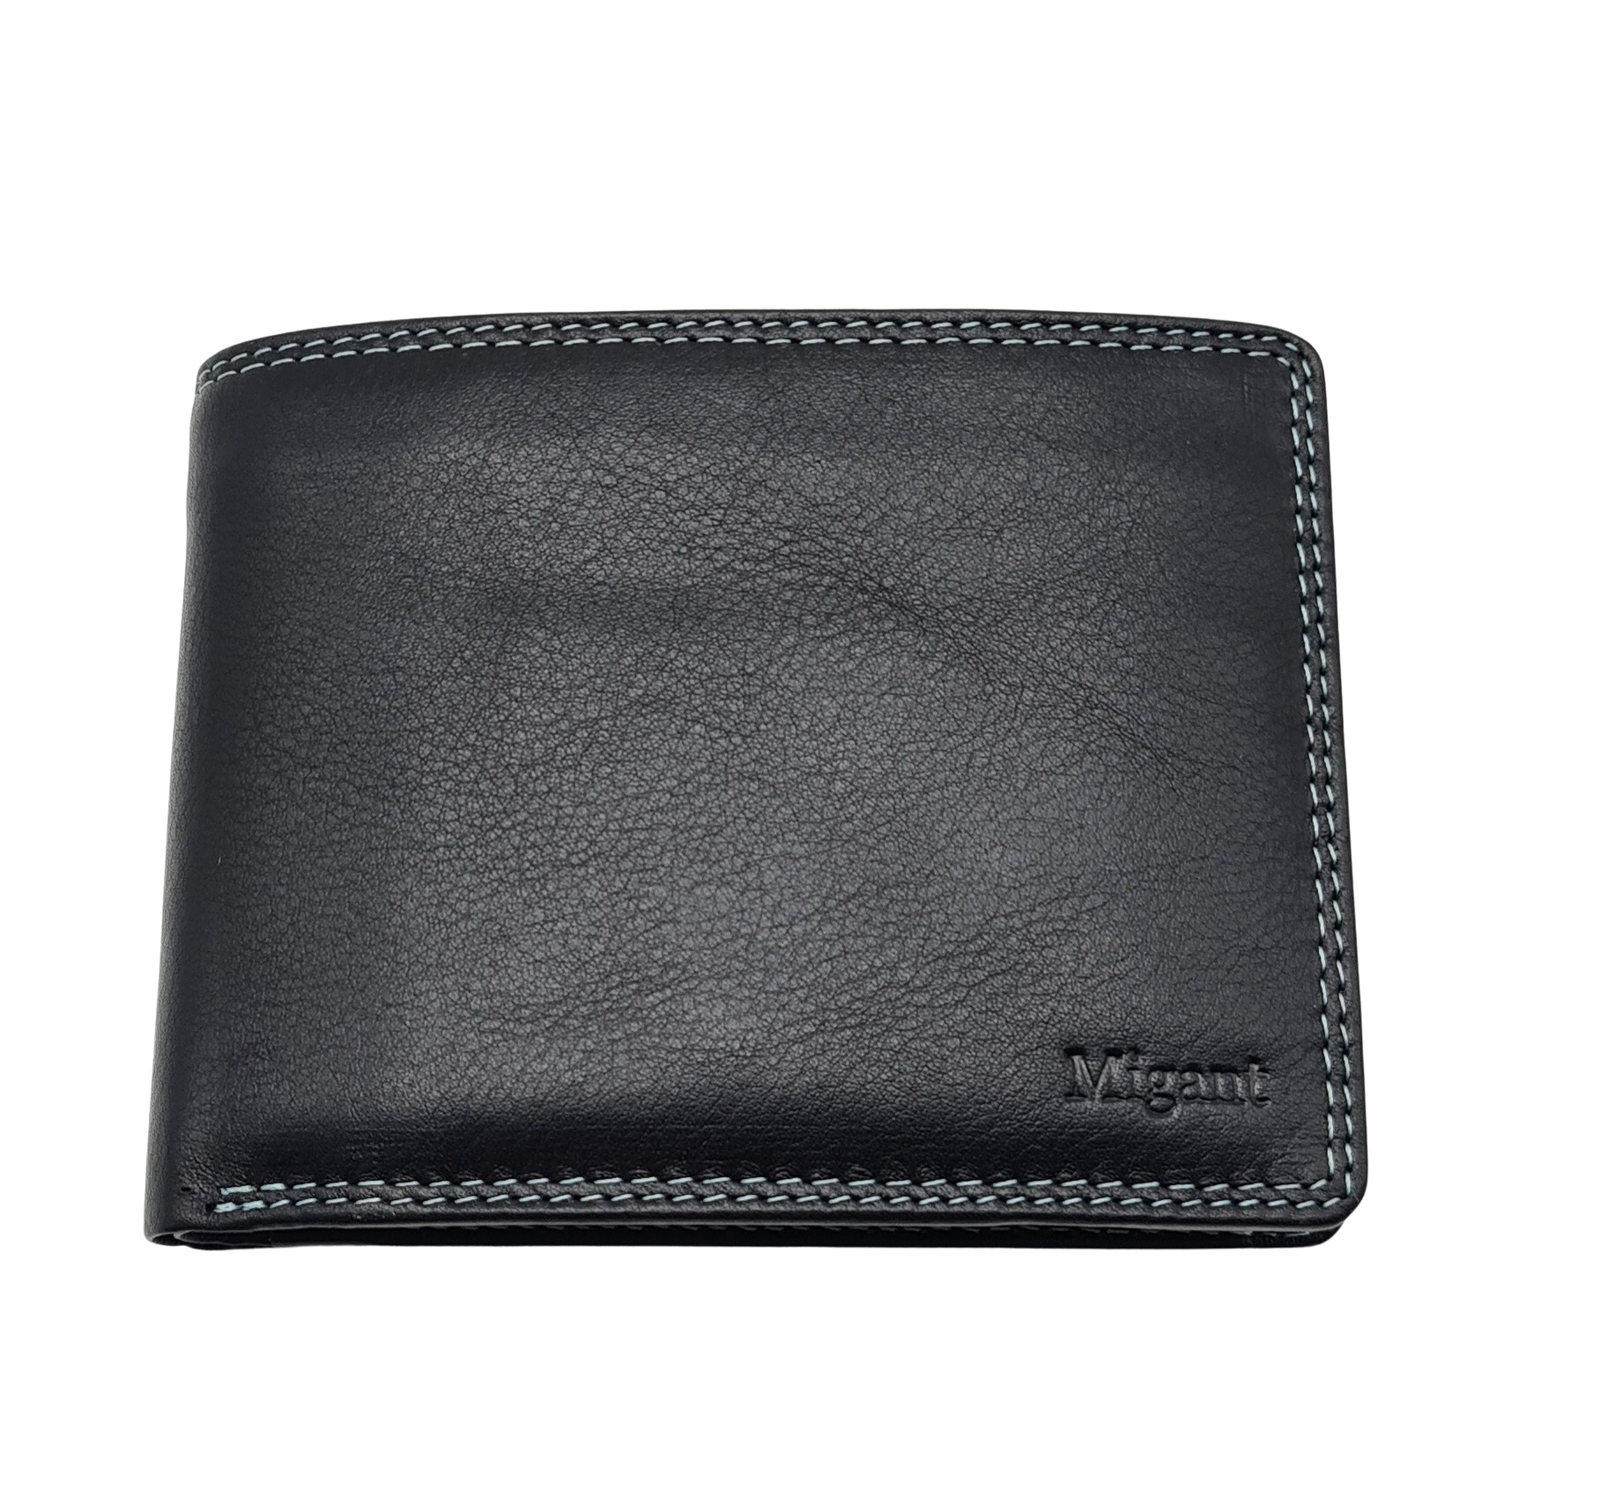 Migant Design Multicolour leather wallet 72357 - Migant